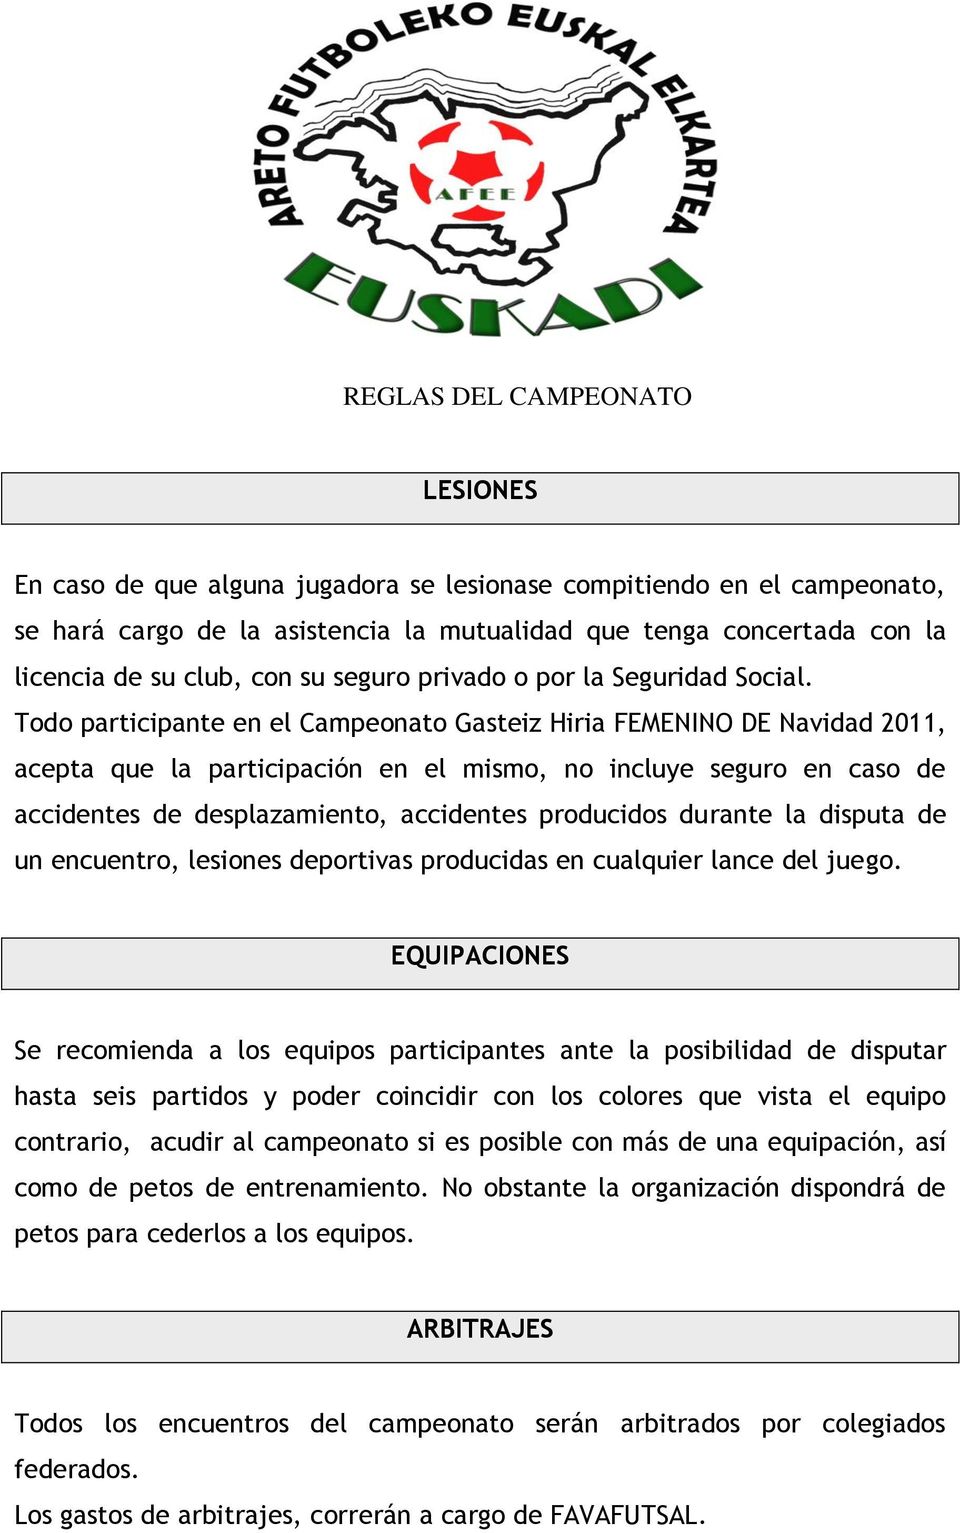 Todo participante en el Campeonato Gasteiz Hiria FEMENINO DE Navidad 2011, acepta que la participación en el mismo, no incluye seguro en caso de accidentes de desplazamiento, accidentes producidos